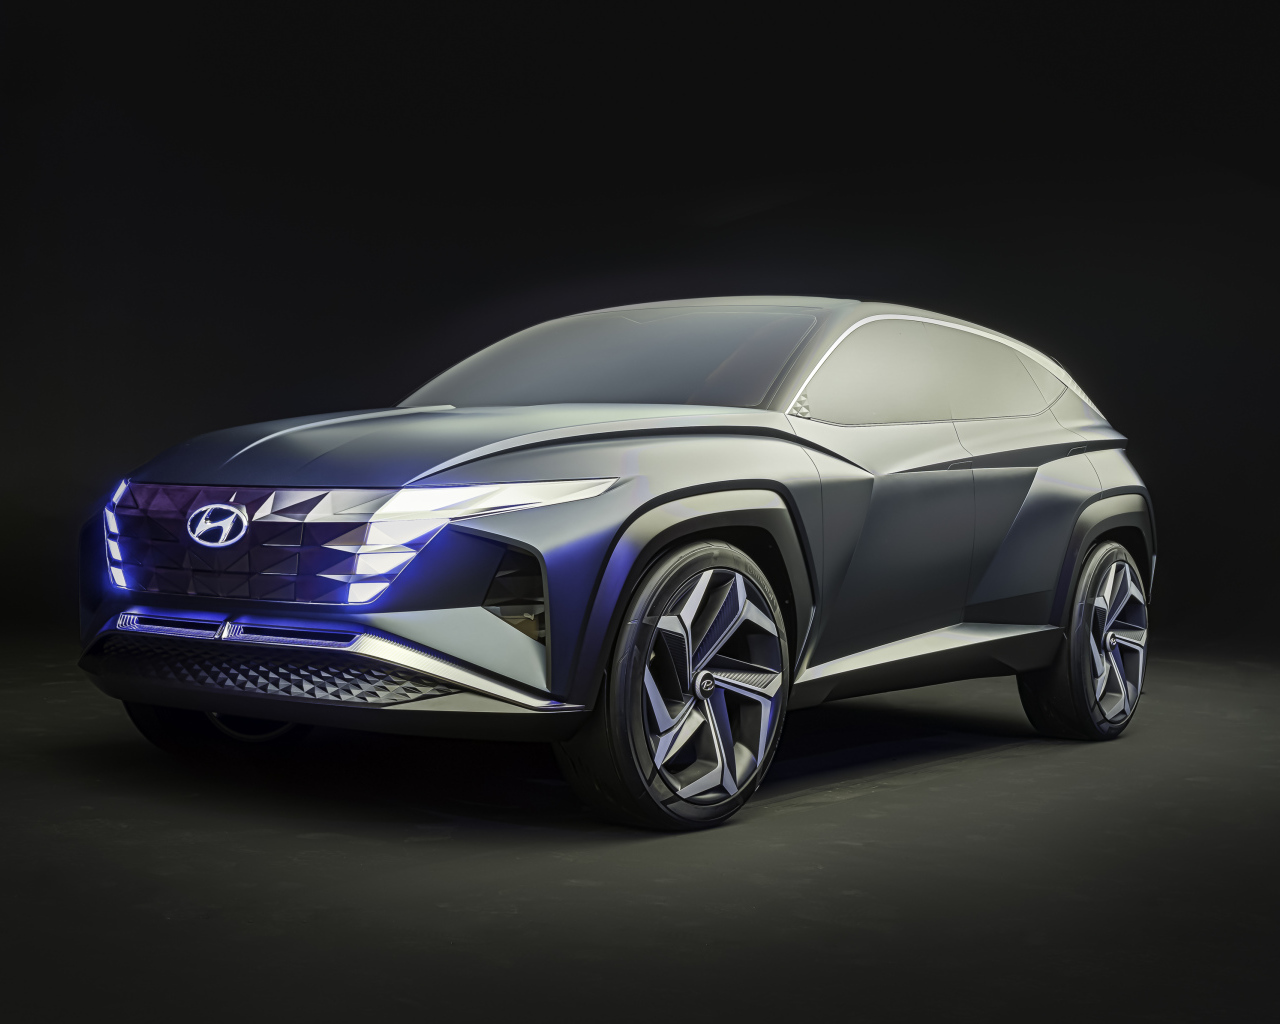 2019 Hyundai Vision T Concept silver car